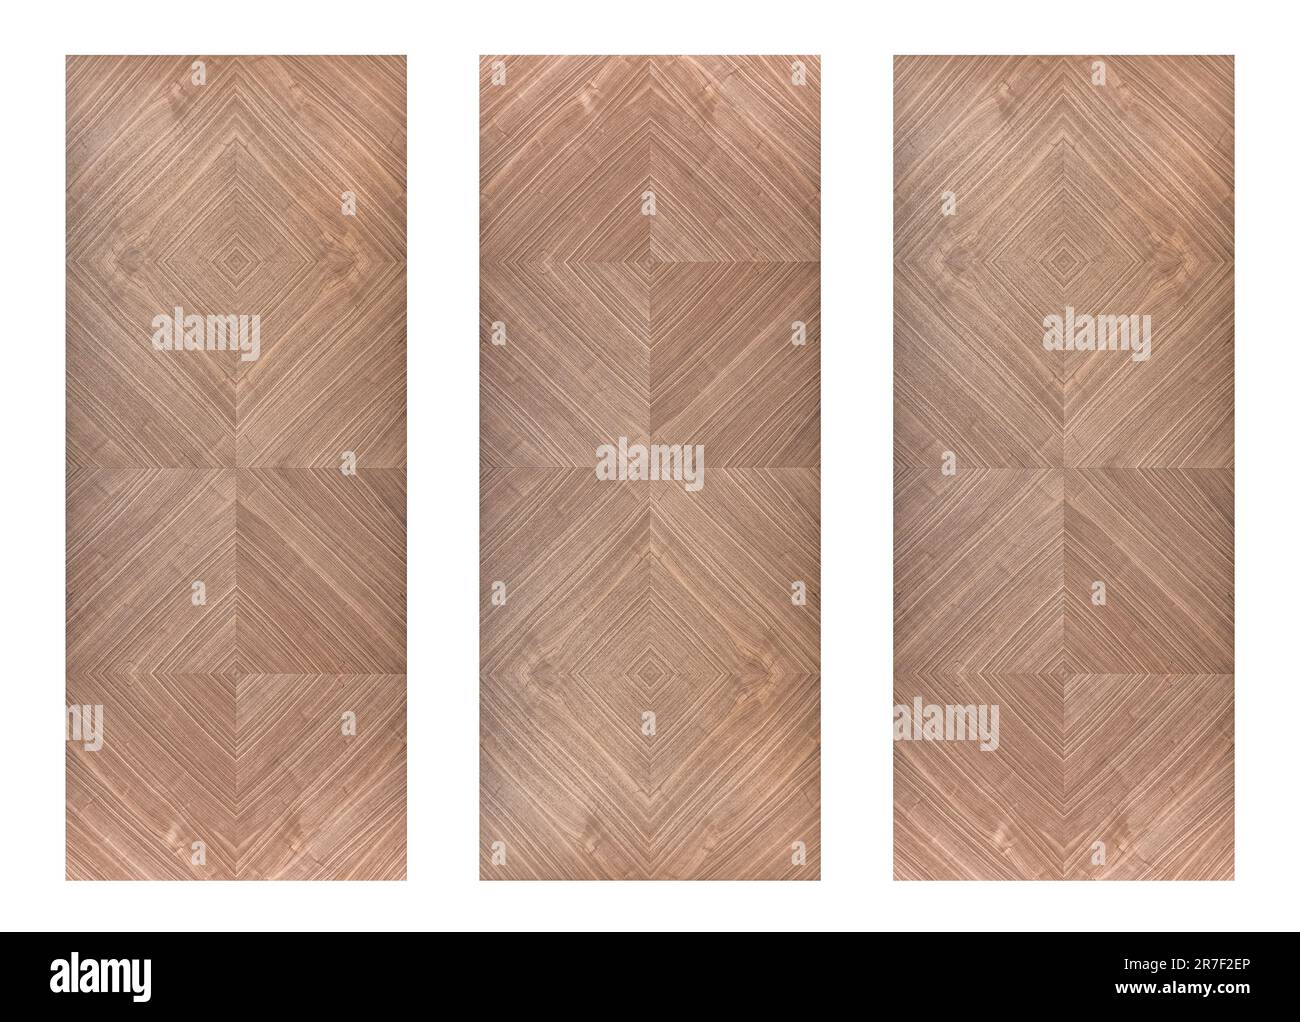 Panneaux muraux en noyer avec motif géométrique rhombique isolé sur fond blanc Banque D'Images